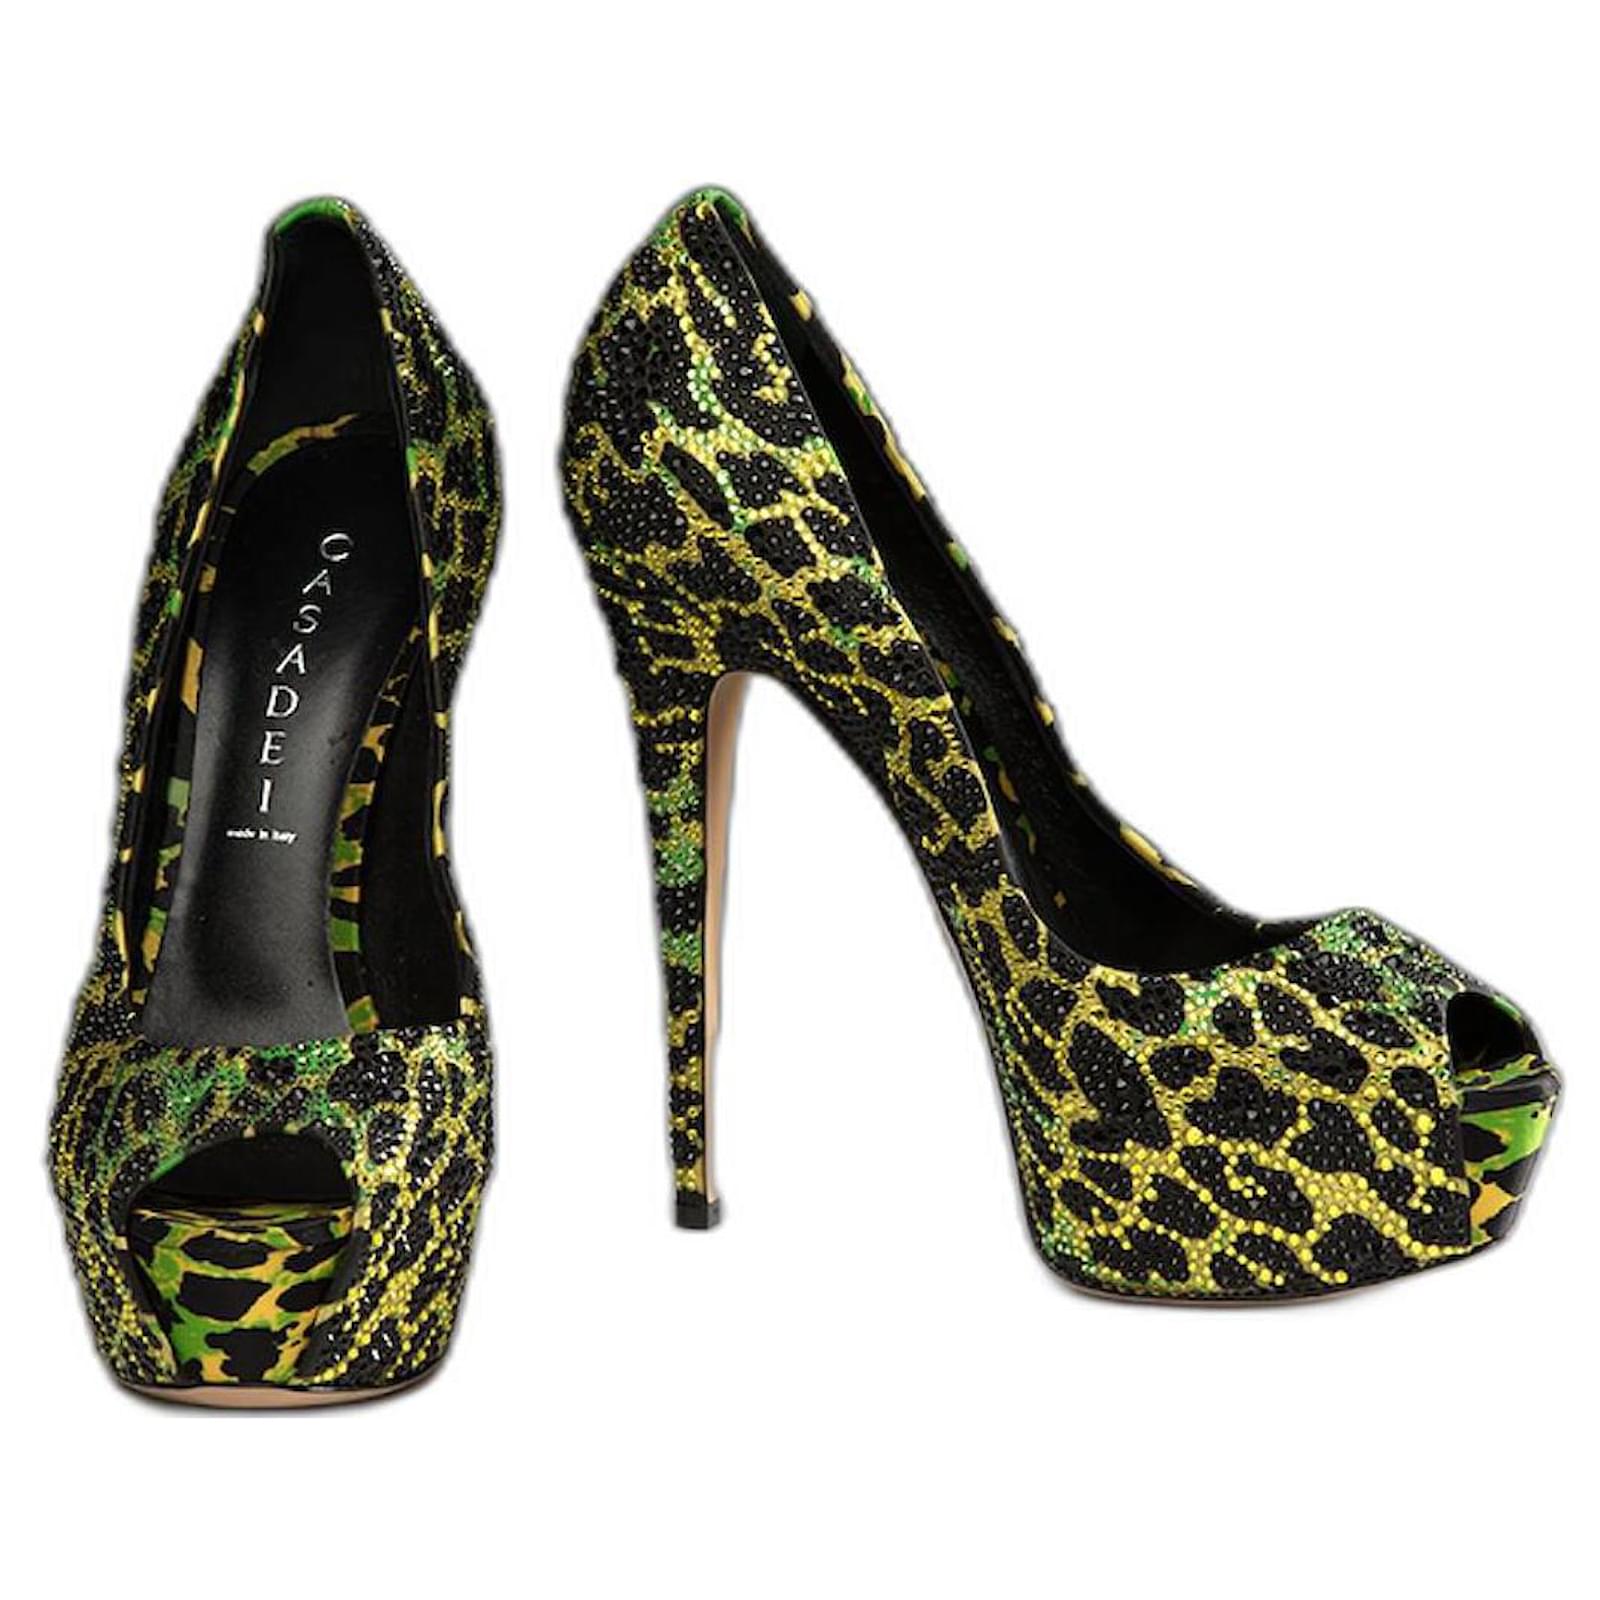 Versace - High heels shoes - Size: Shoes / EU 40.5, UK 6,5, US 6,5 -  Catawiki